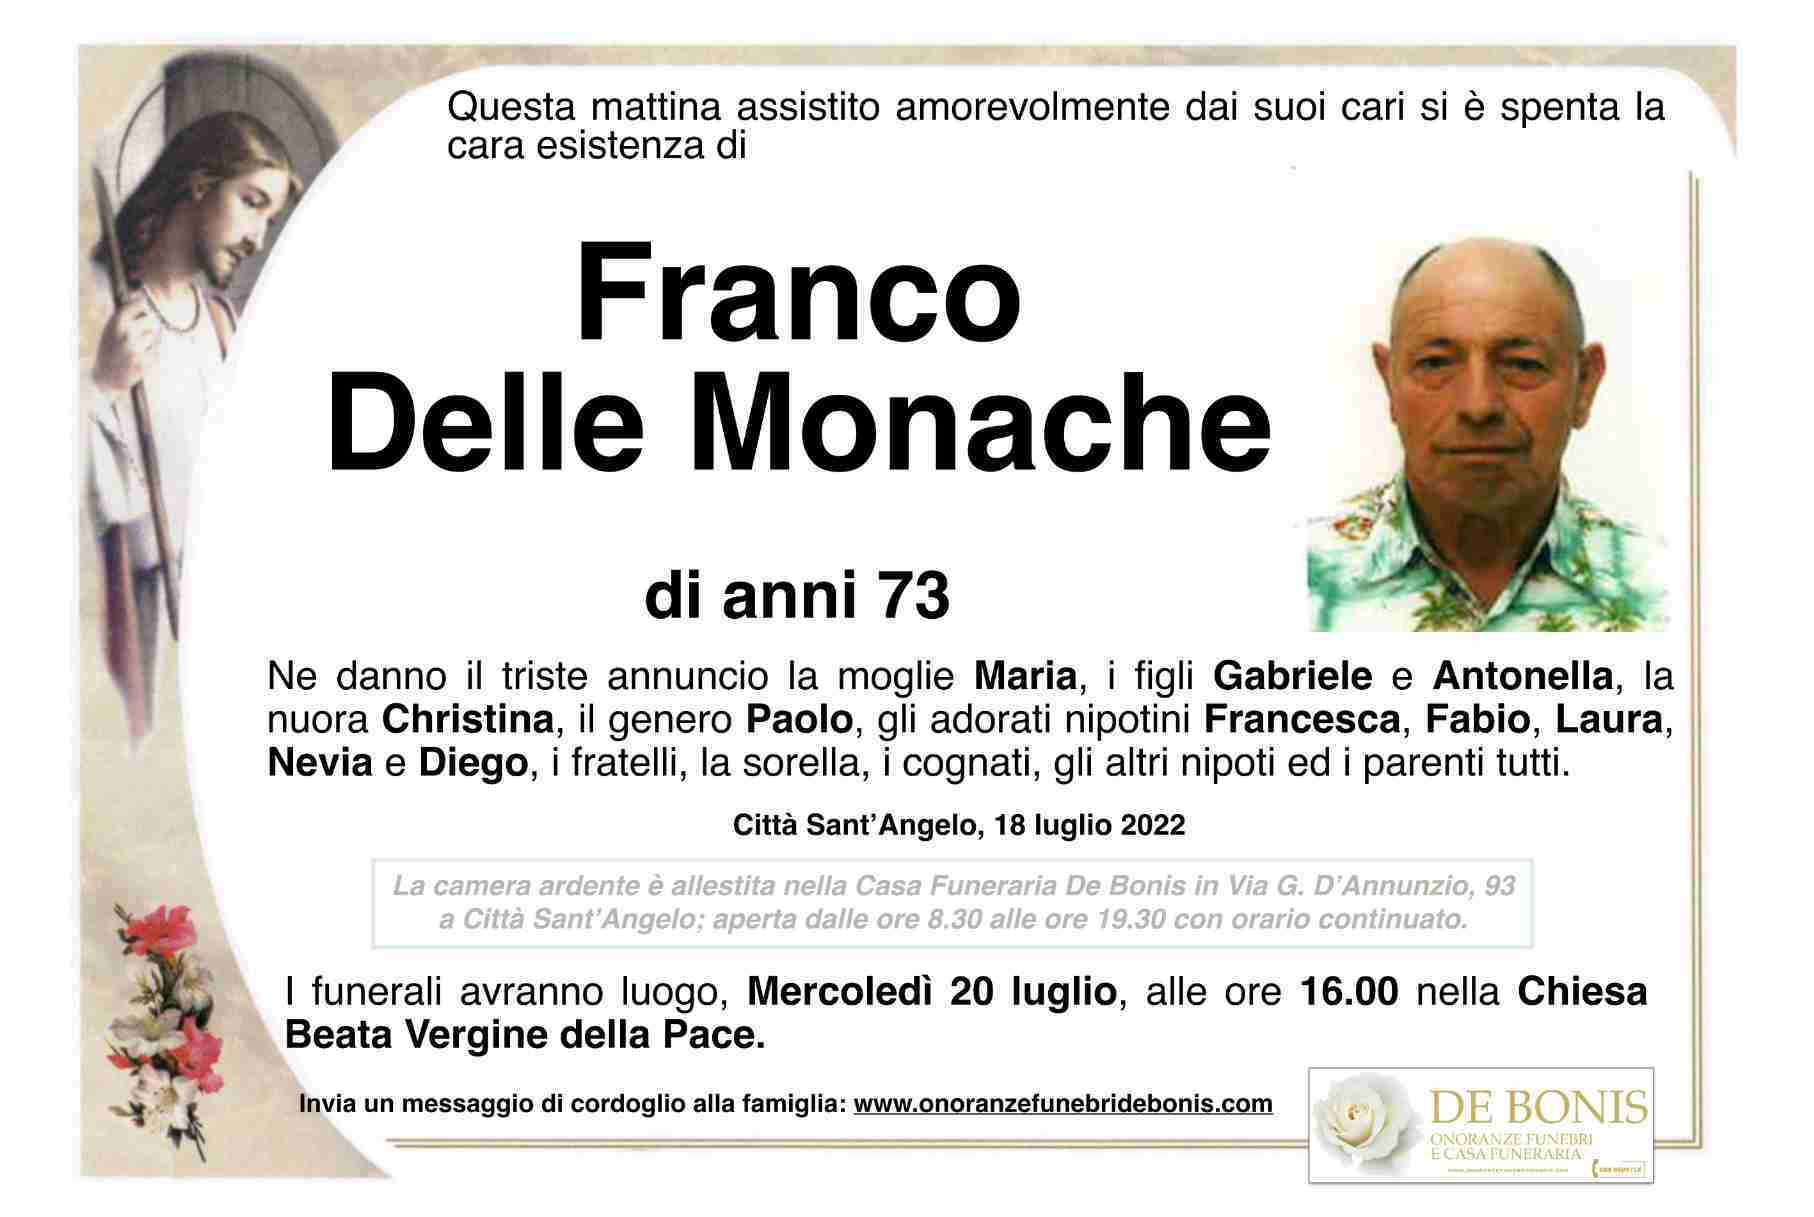 Franco Delle Monache